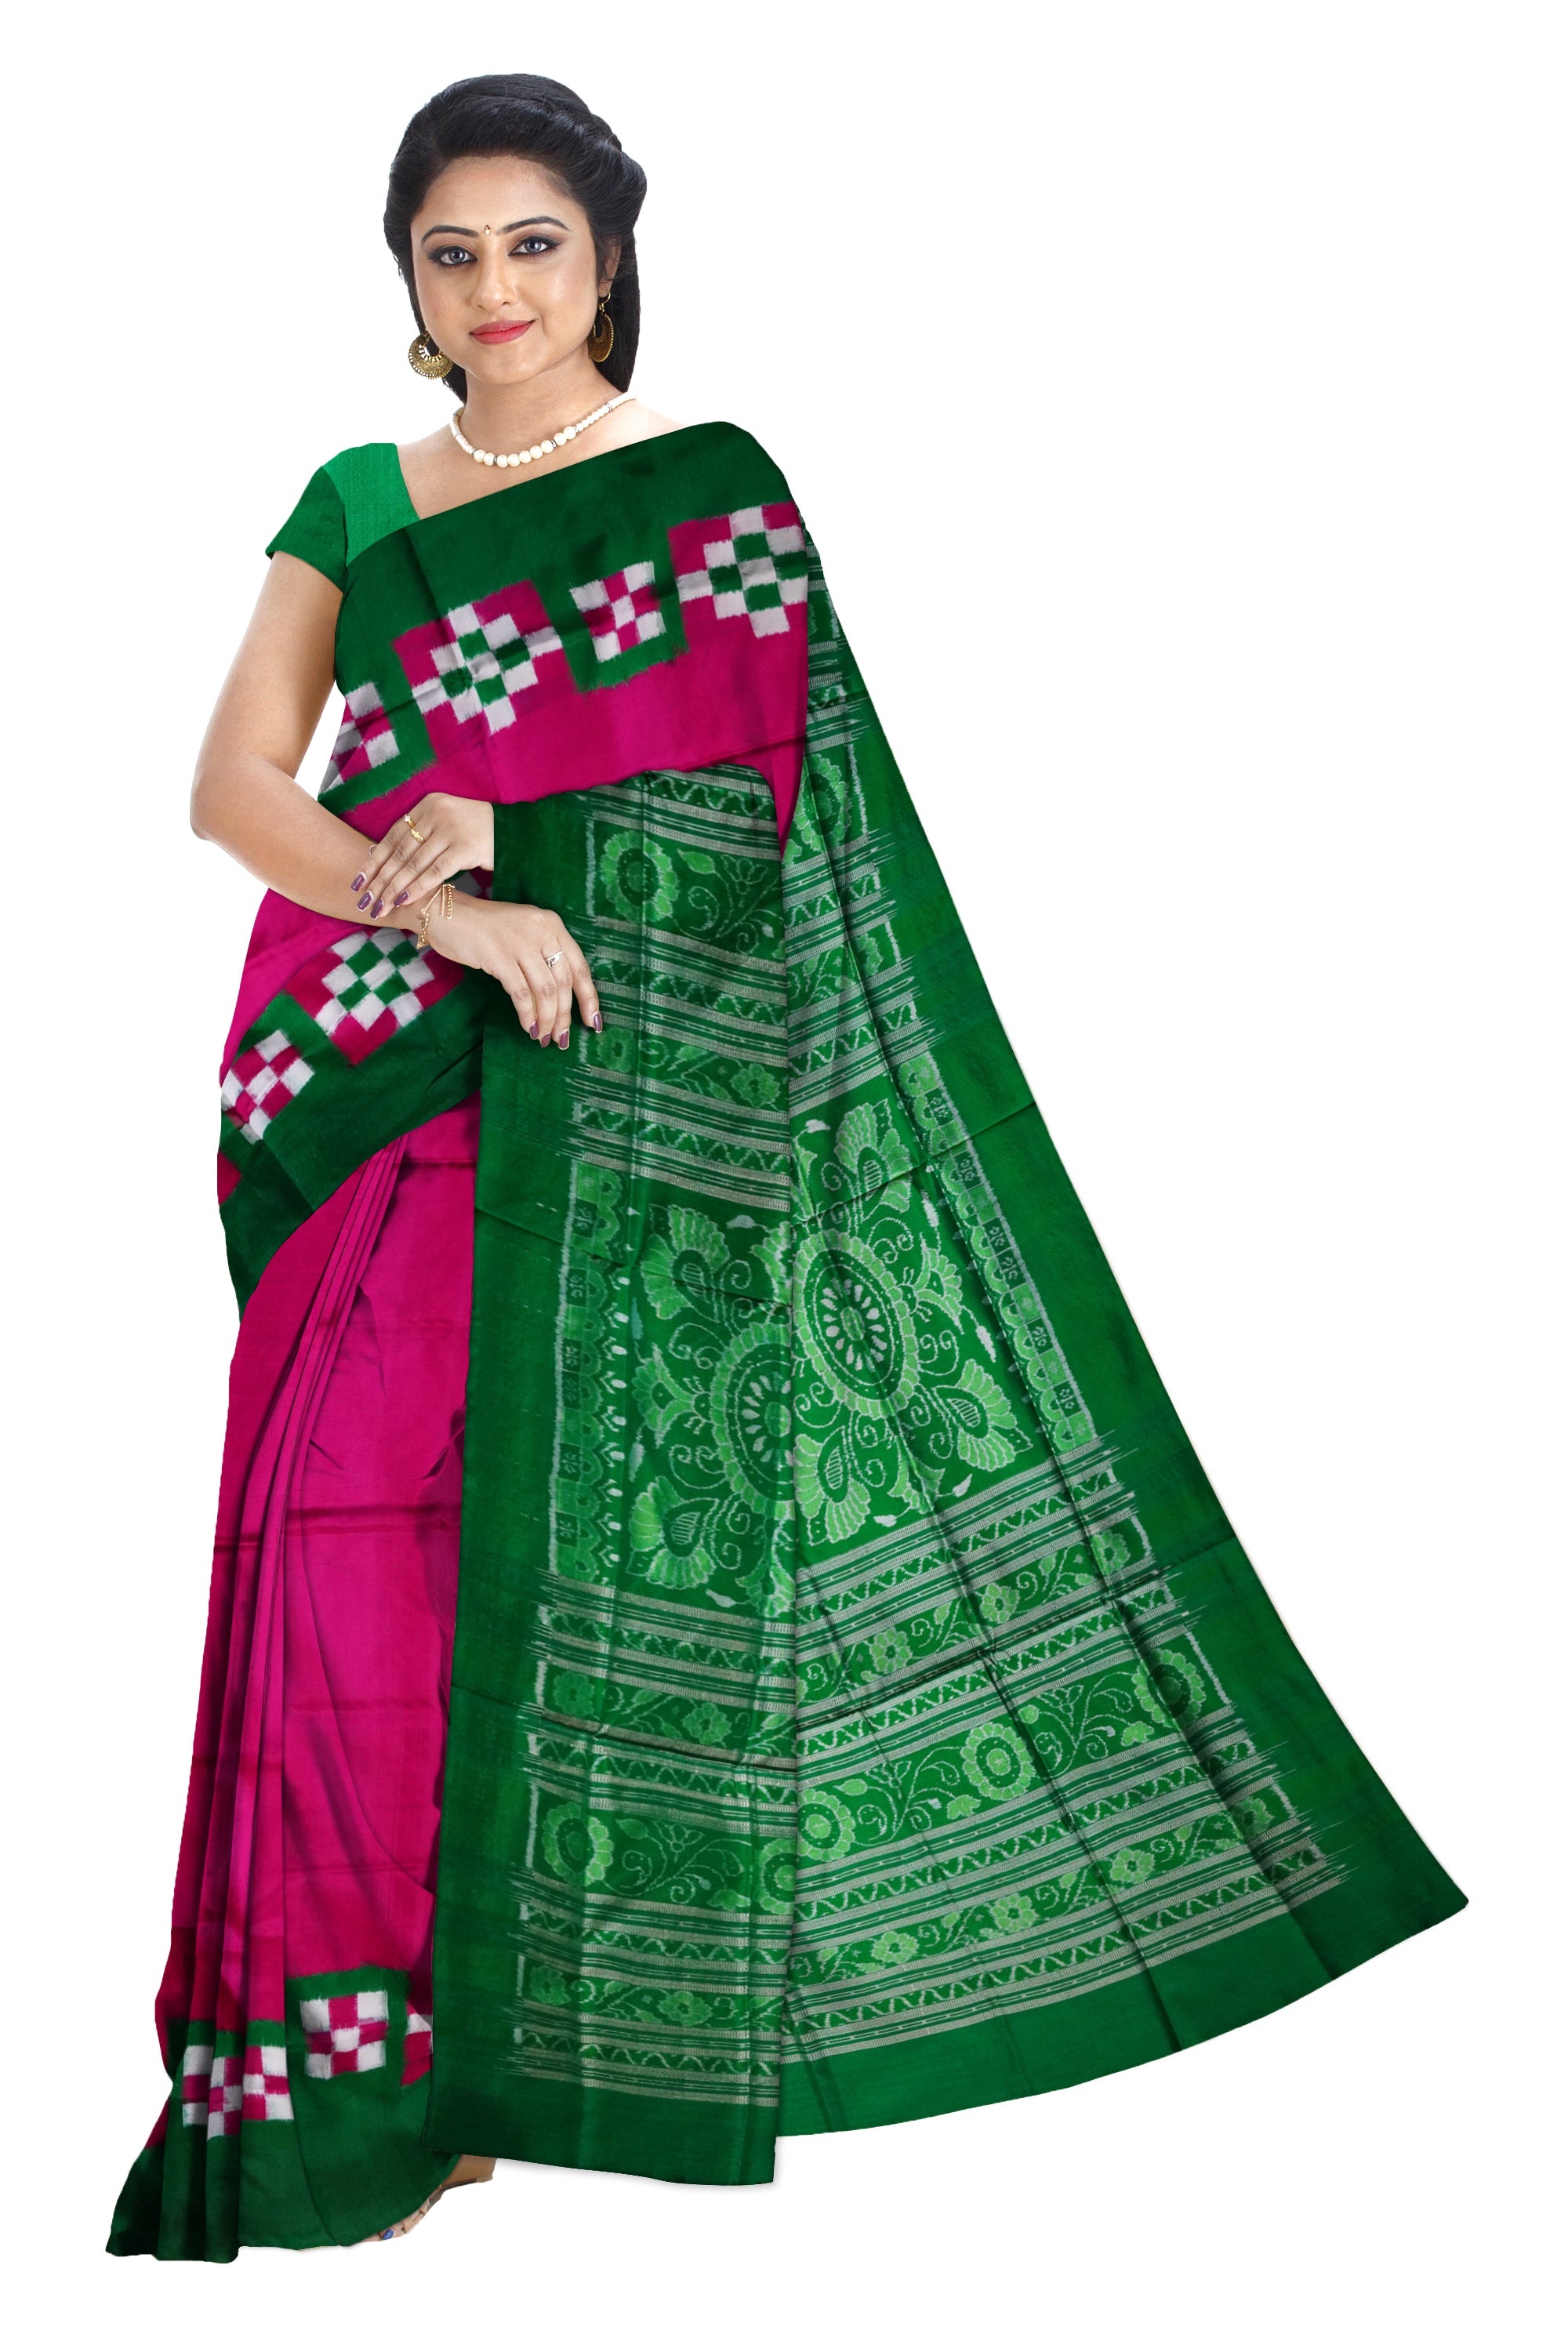 Plain border dhadi pasapali pure pata saree is pink and green color. - Koshali Arts & Crafts Enterprise